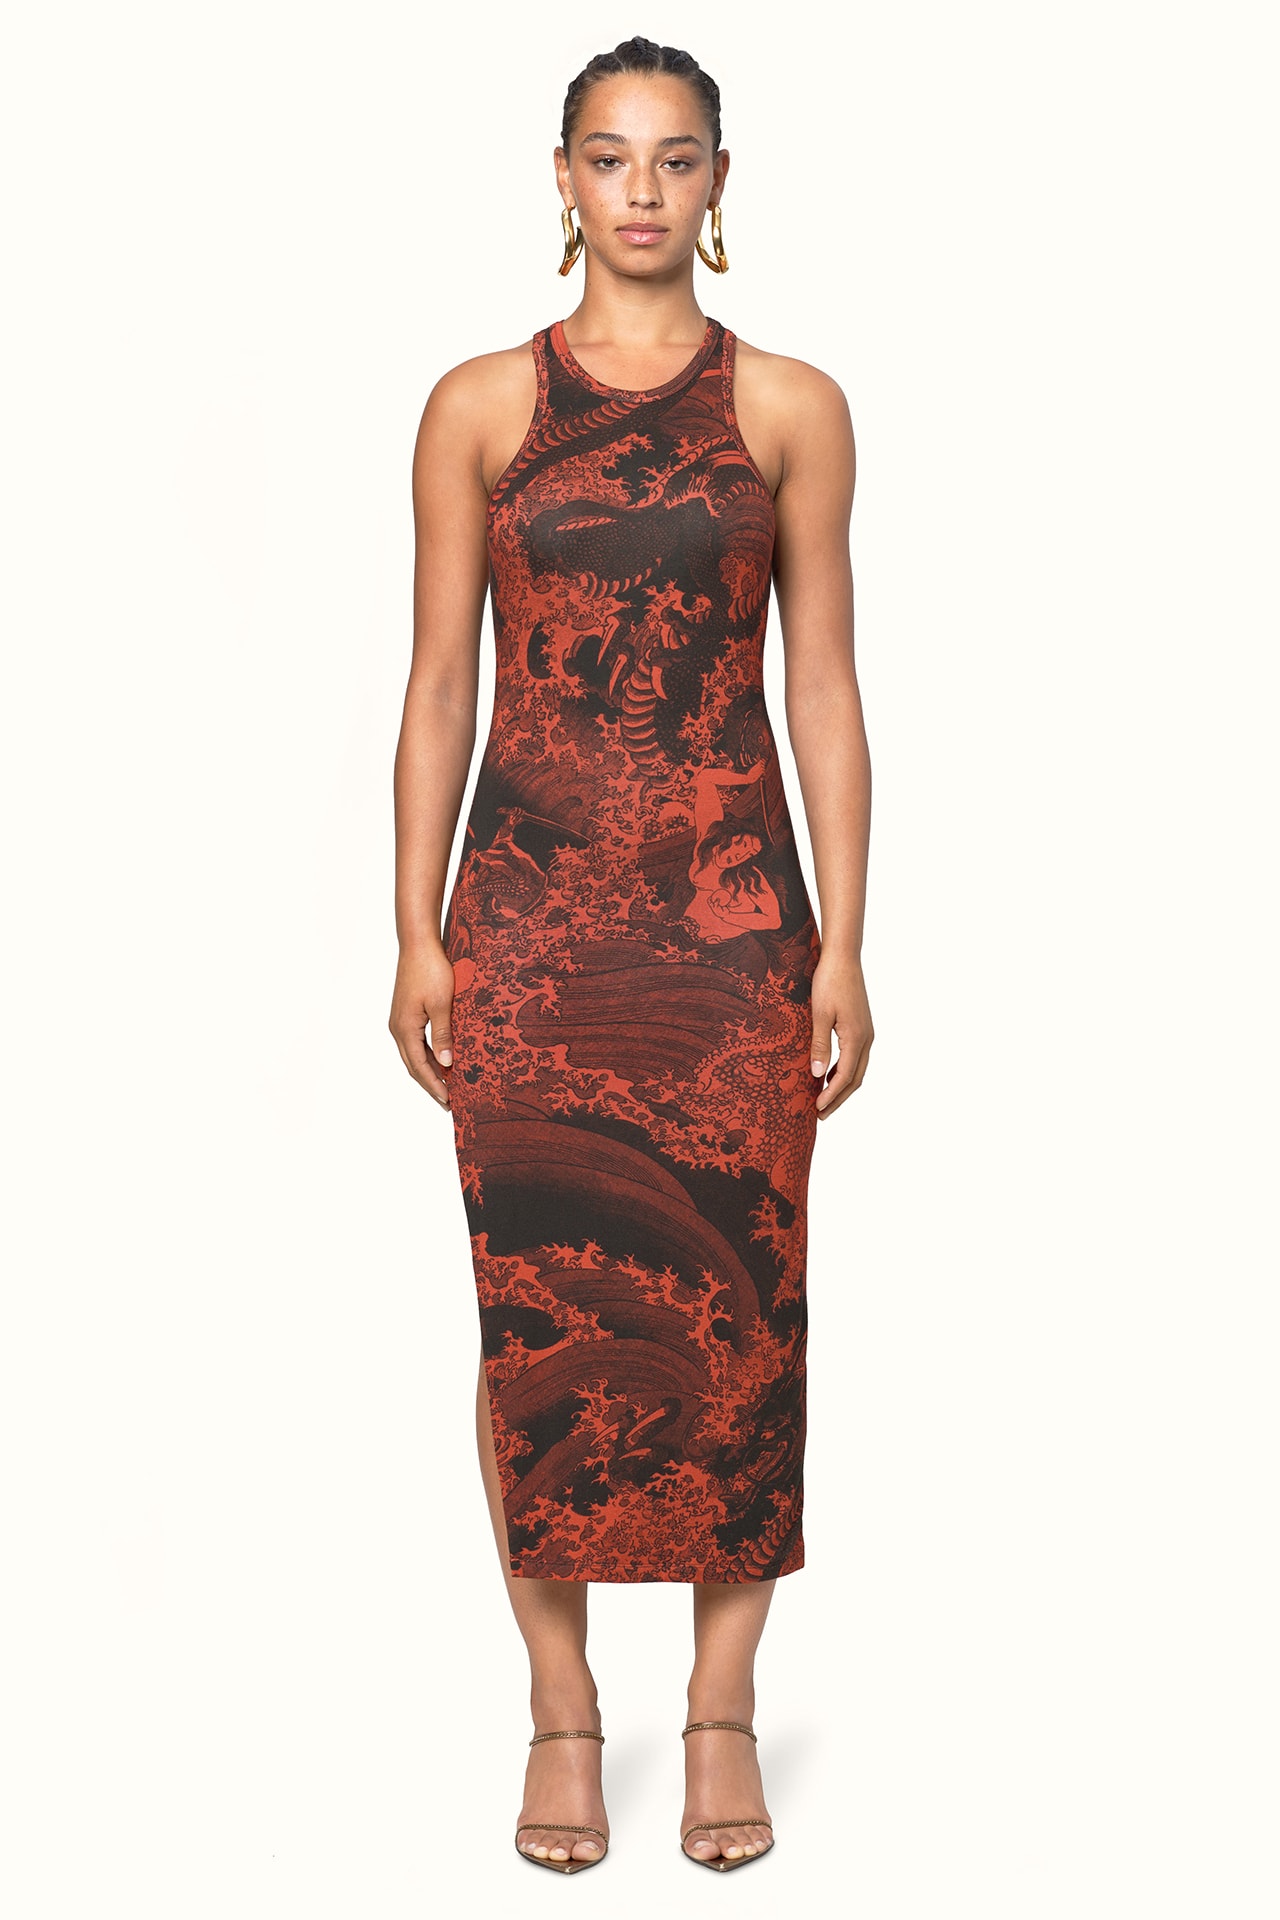 Rihanna Fenty LVMH Luxury Fashion Brand Maison Release 6 19 red pattern dress heels sandals